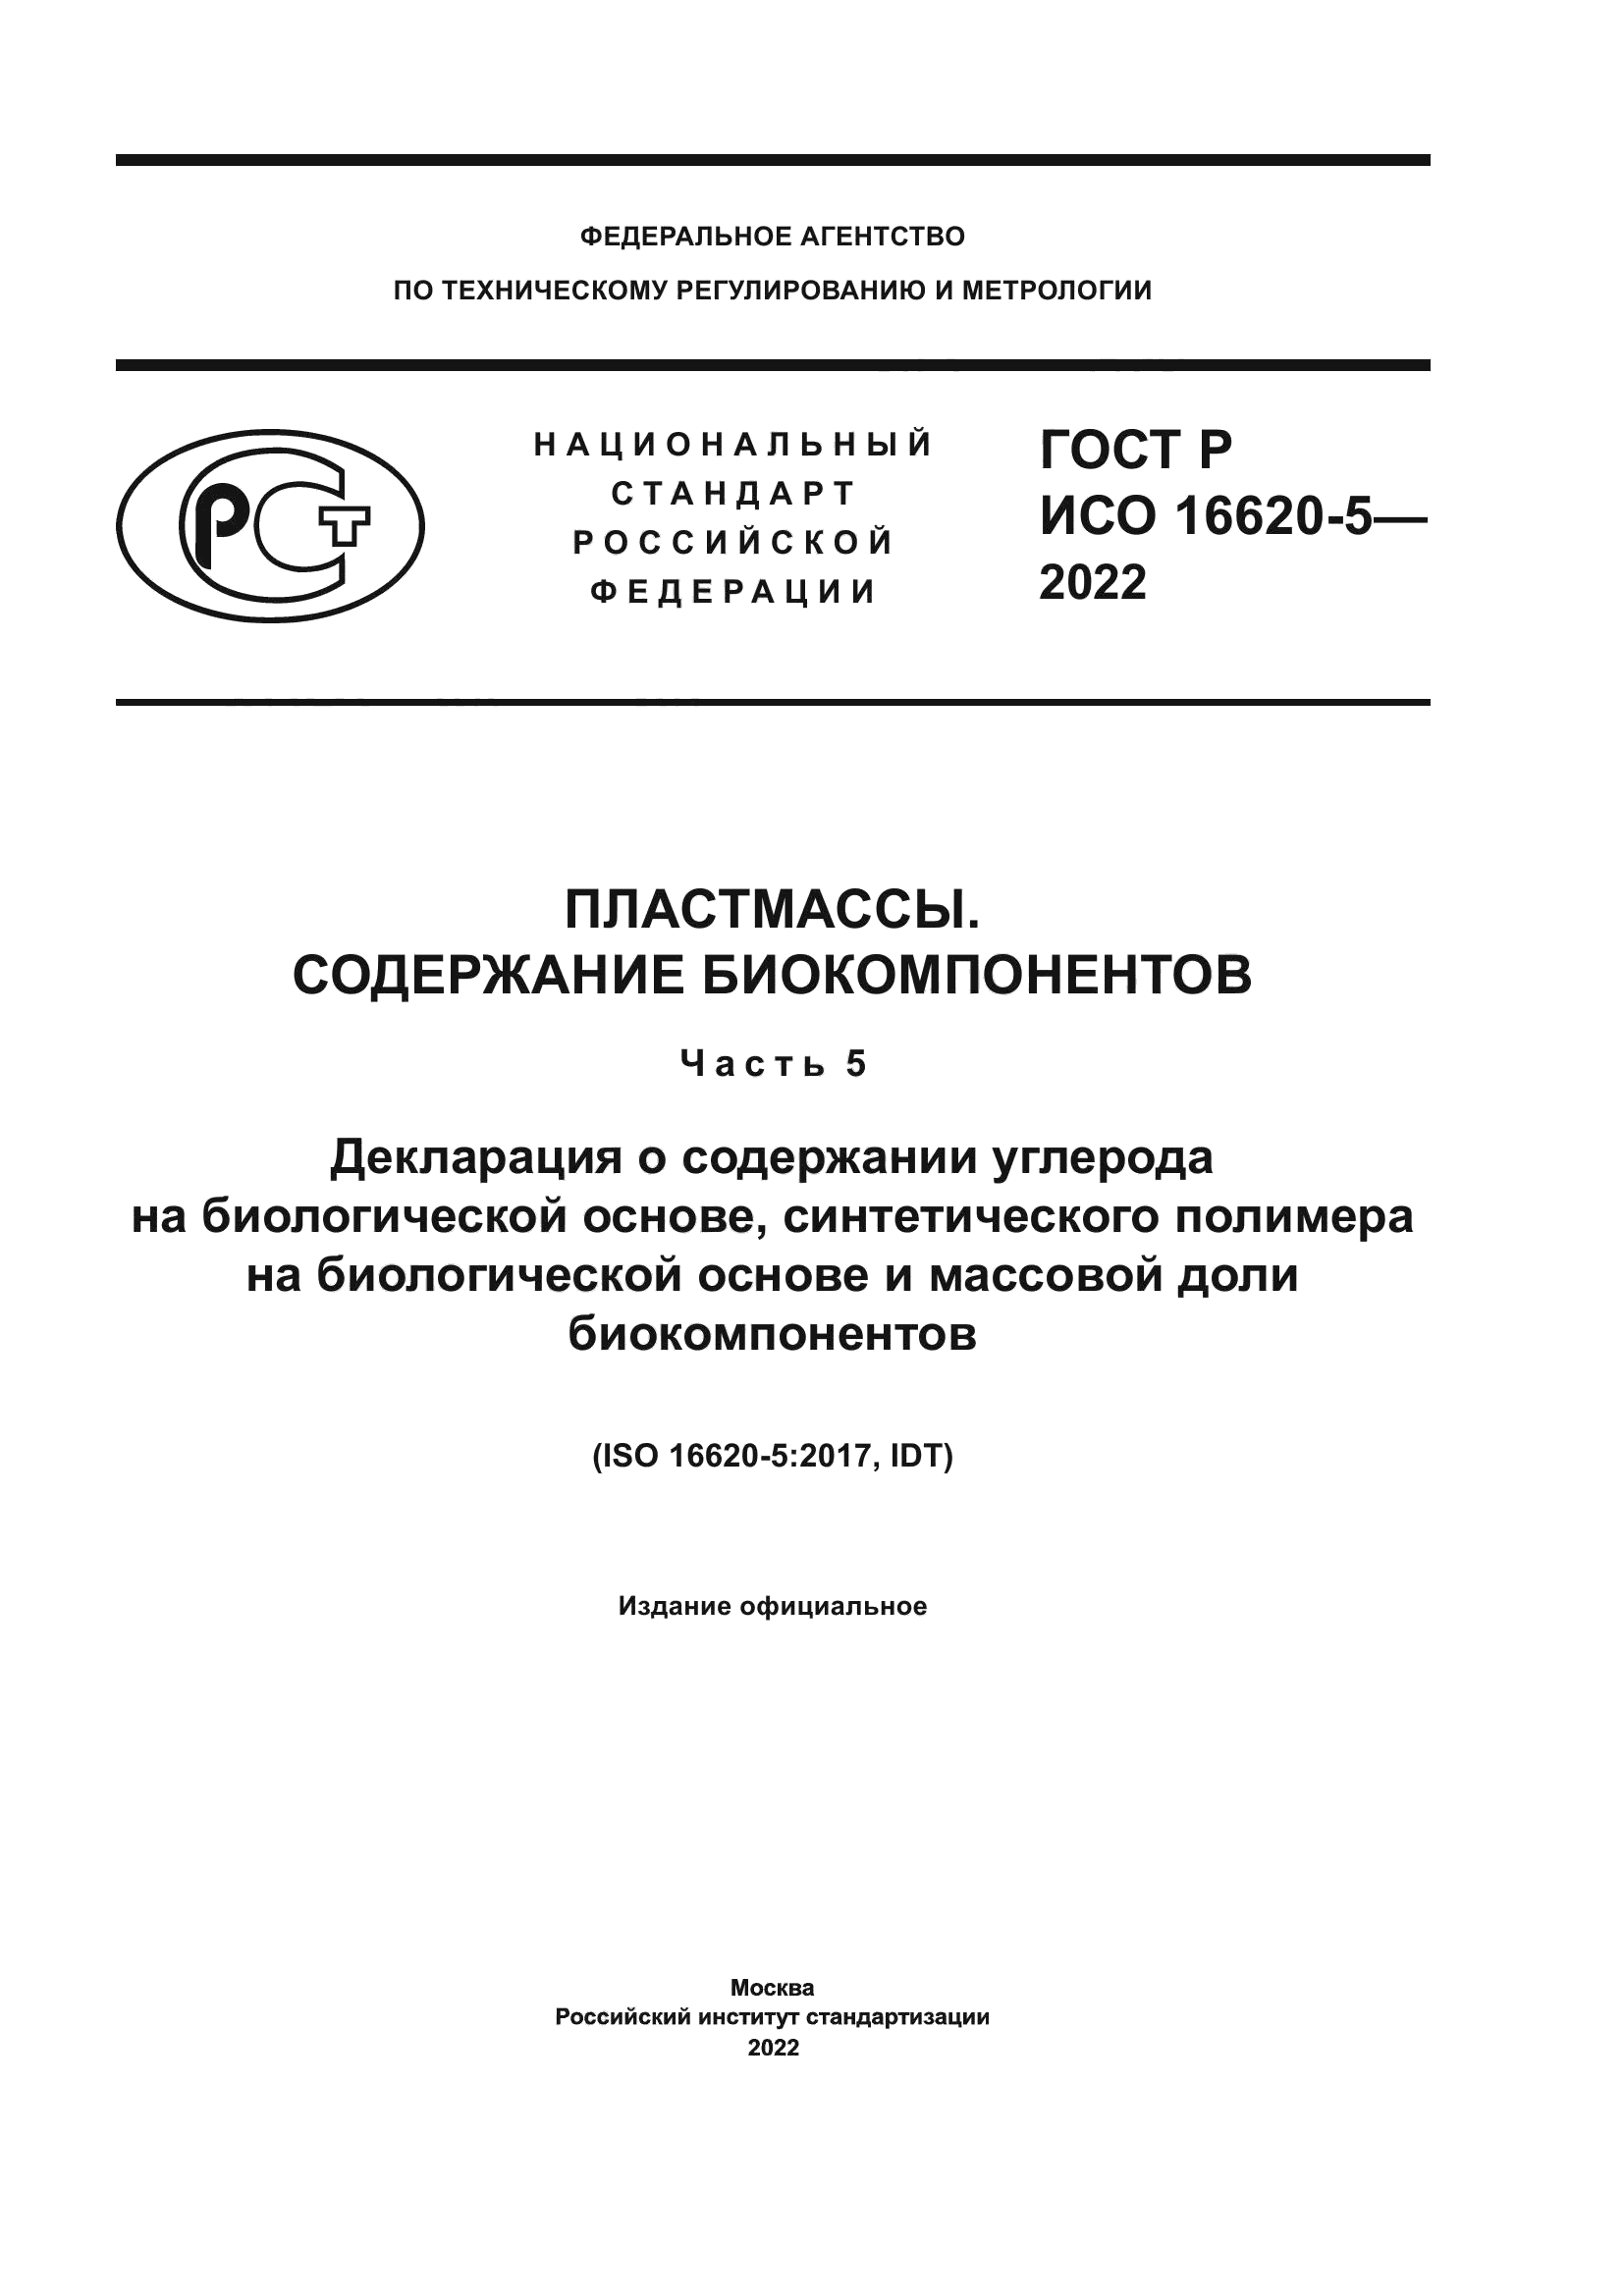 ГОСТ Р ИСО 16620-5-2022